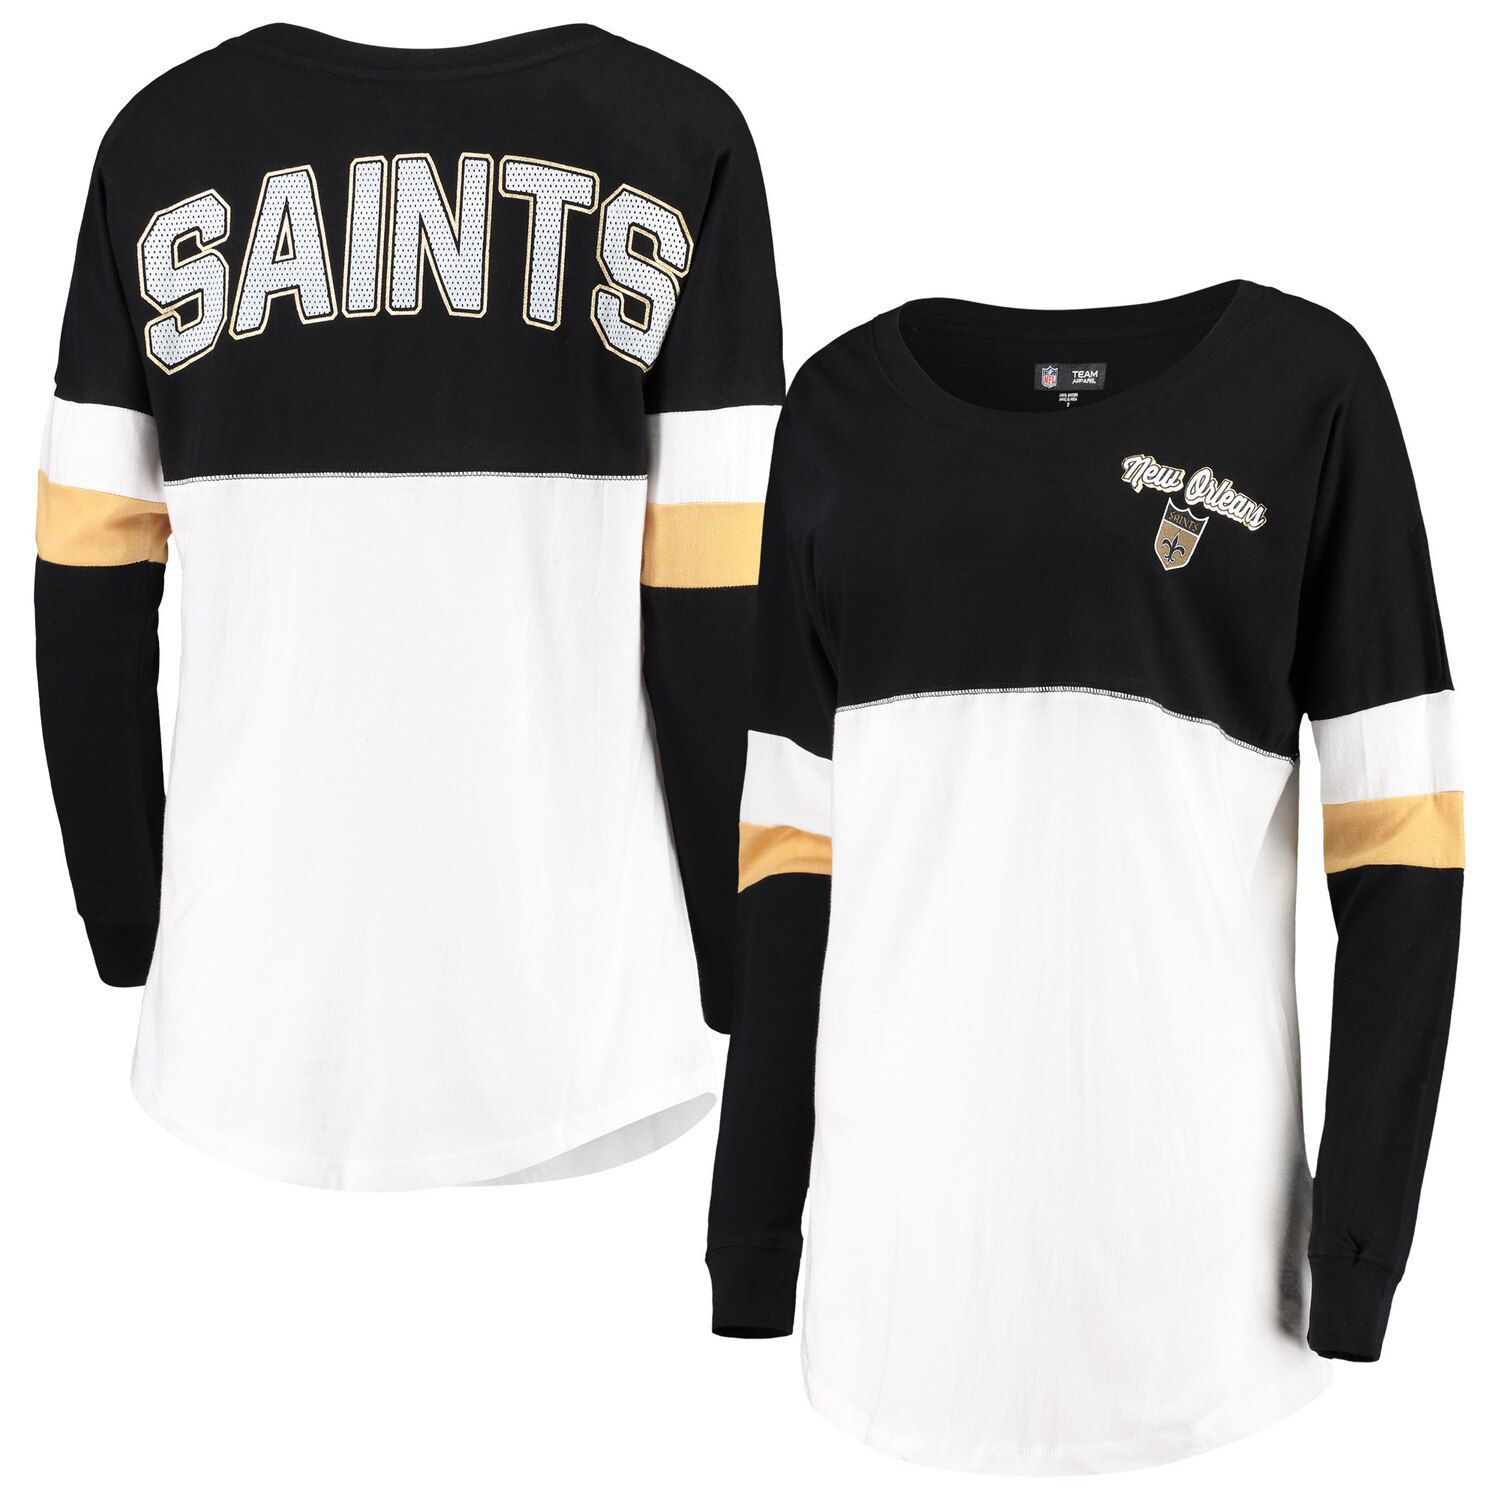 new orleans saints sequin jersey